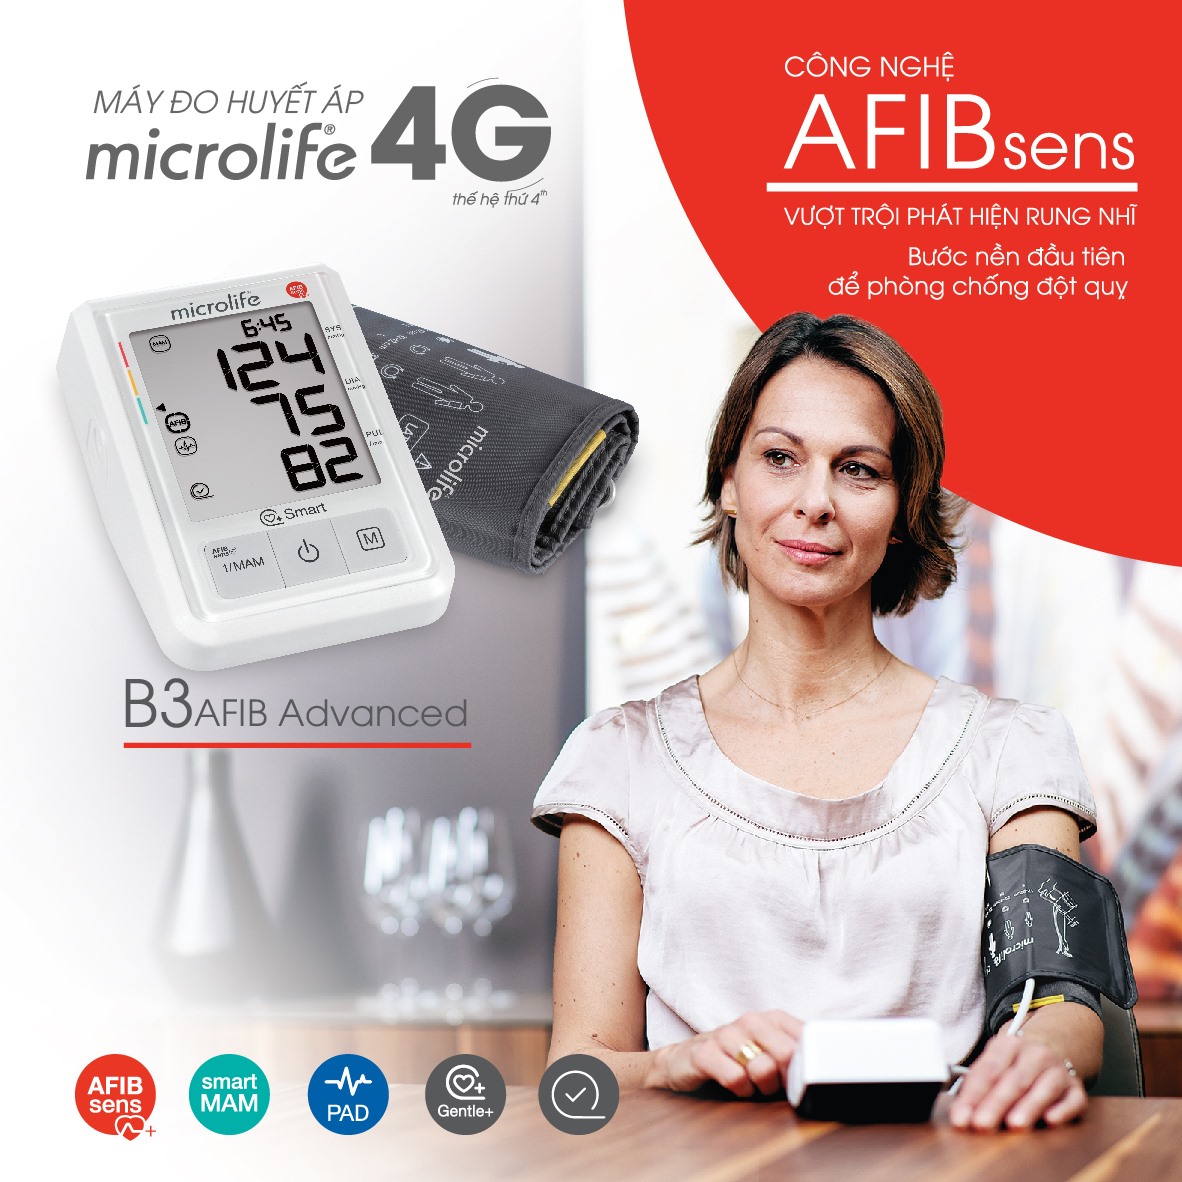 Máy đo huyết áp Microlife 𝗕𝟯 𝗔𝗙𝗜𝗕 𝗔𝗱𝘃𝗮𝗻𝗰𝗲𝗱 có khả năng đo huyết áp và kiểm soát nhịp tim nhanh